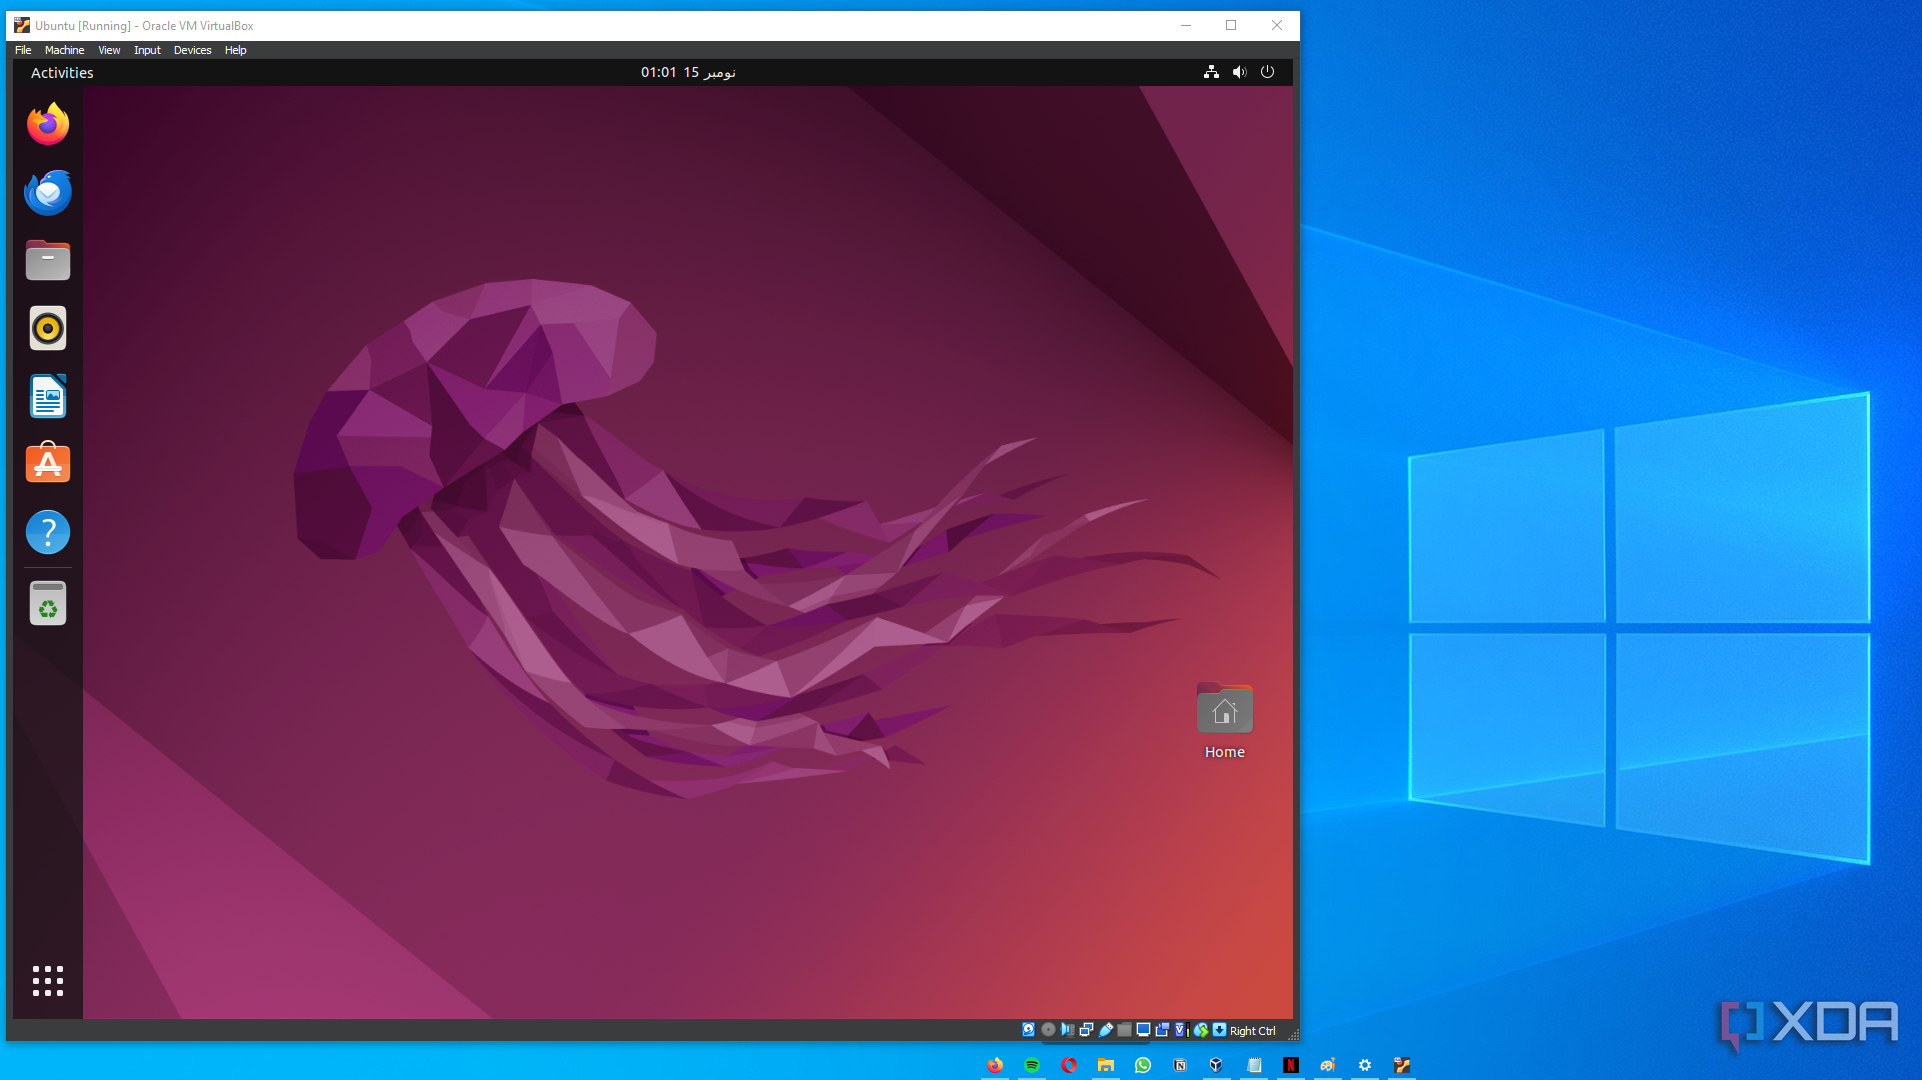 ubuntu opened in virtualbox on windows 10